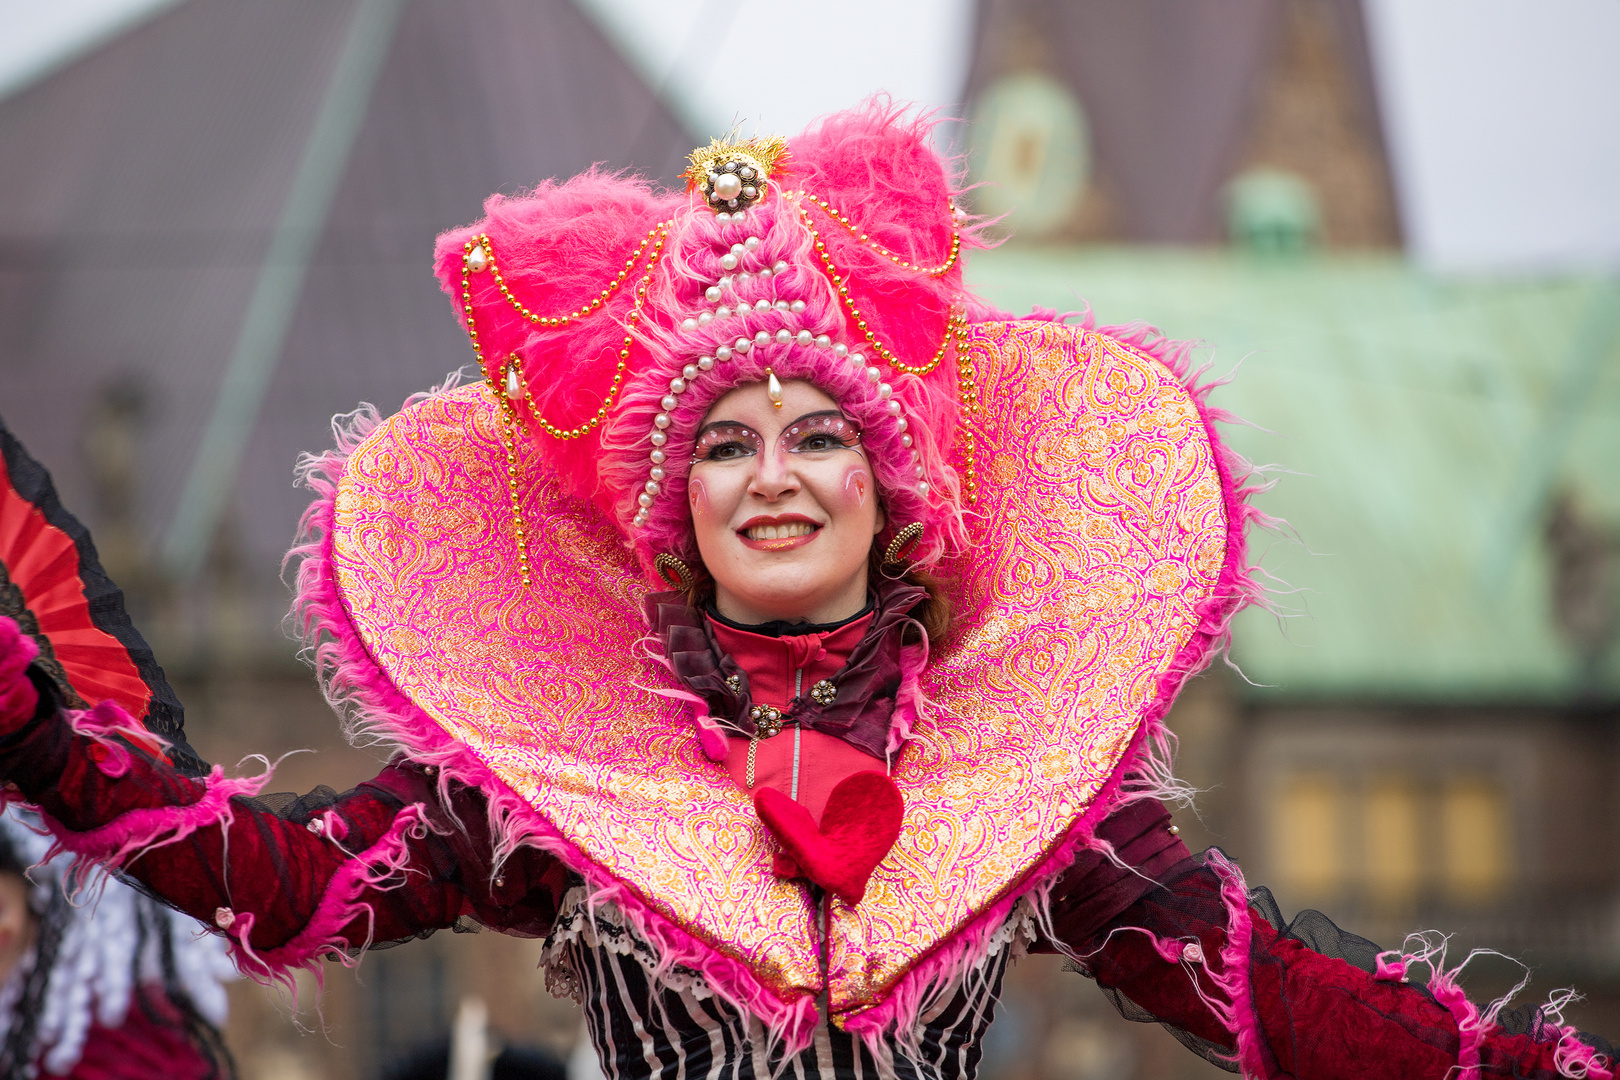 Pure Lebensfreude, Samba Karneval Bremen 2020, Bild III